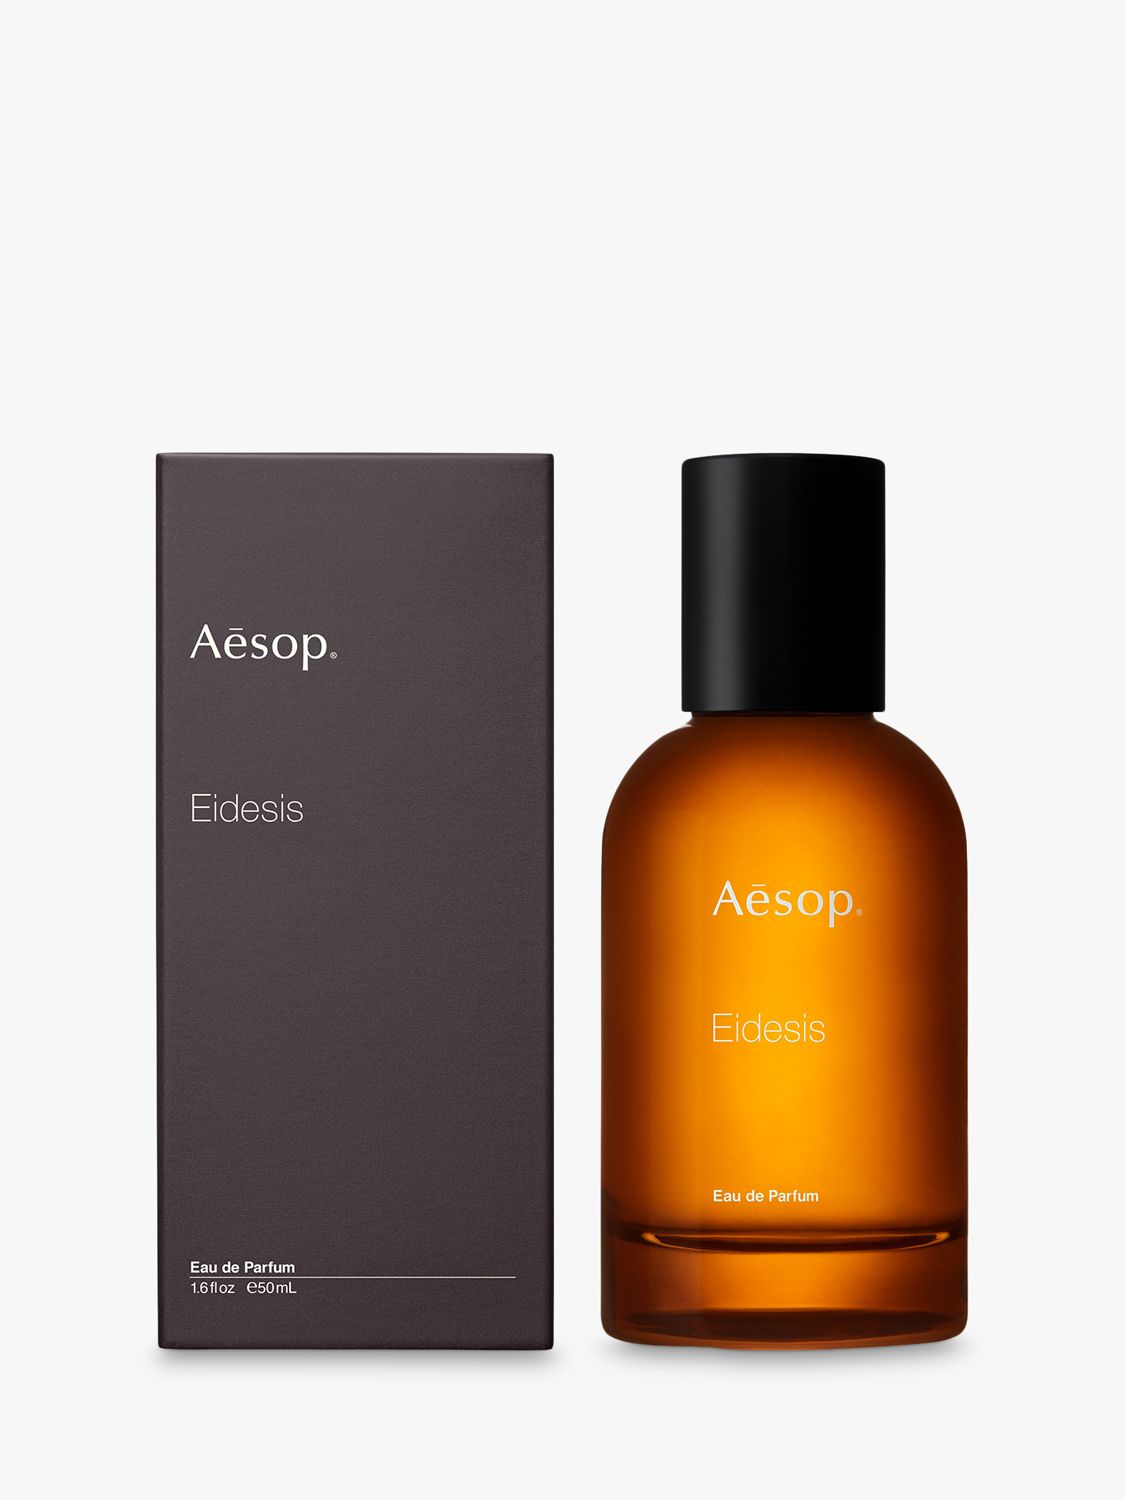 Aesop Eidesis Eau de Parfum, 50ml at John Lewis & Partners